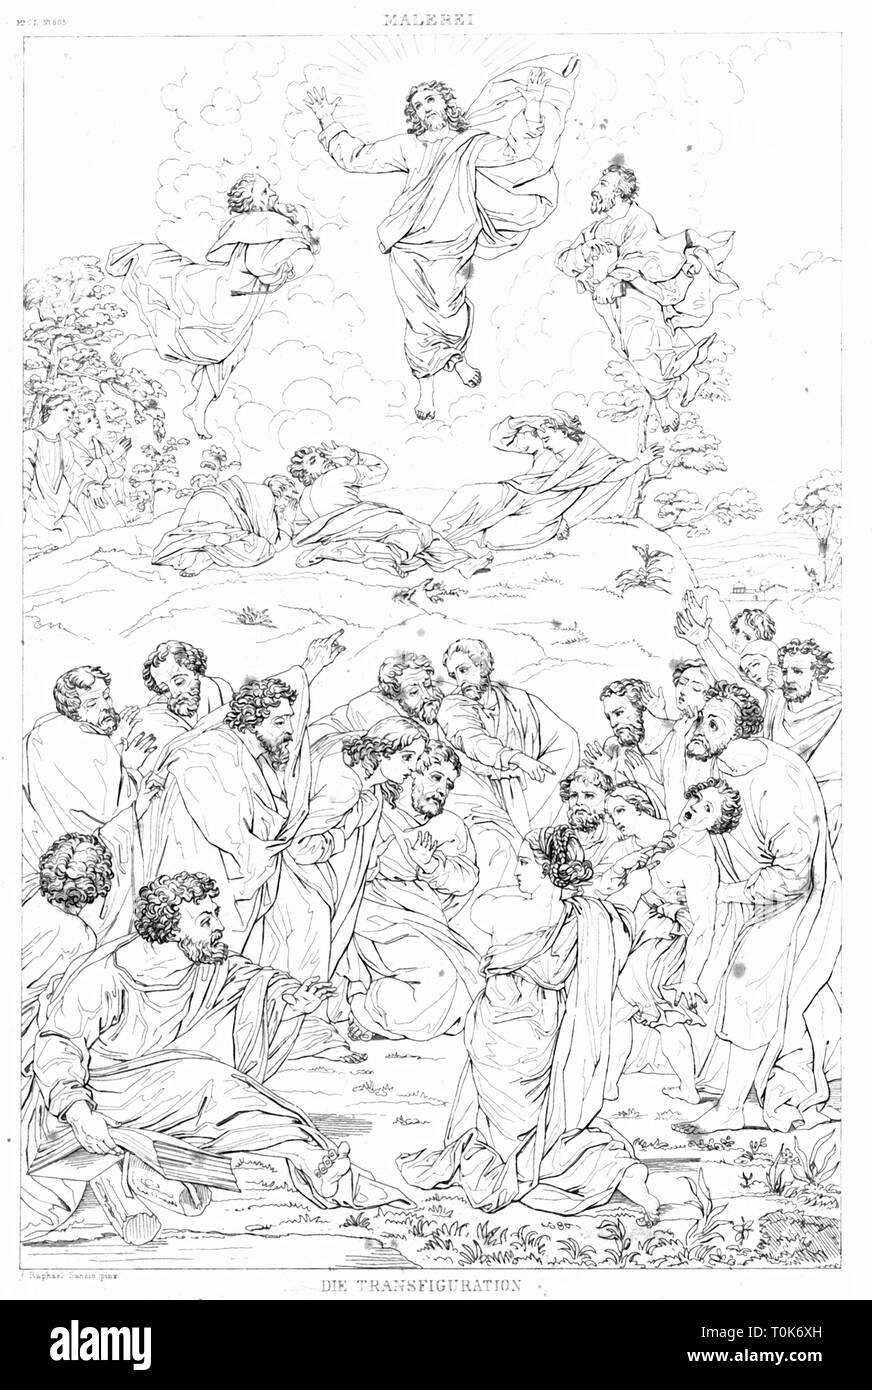 La religion, scènes bibliques, "La Transfiguration", gravure sur acier, 19e siècle, d'après une peinture par Raffaello Sanzio (Raphaël), 1516 - 1520, Additional-Rights Clearance-Info-Not-Available- Banque D'Images